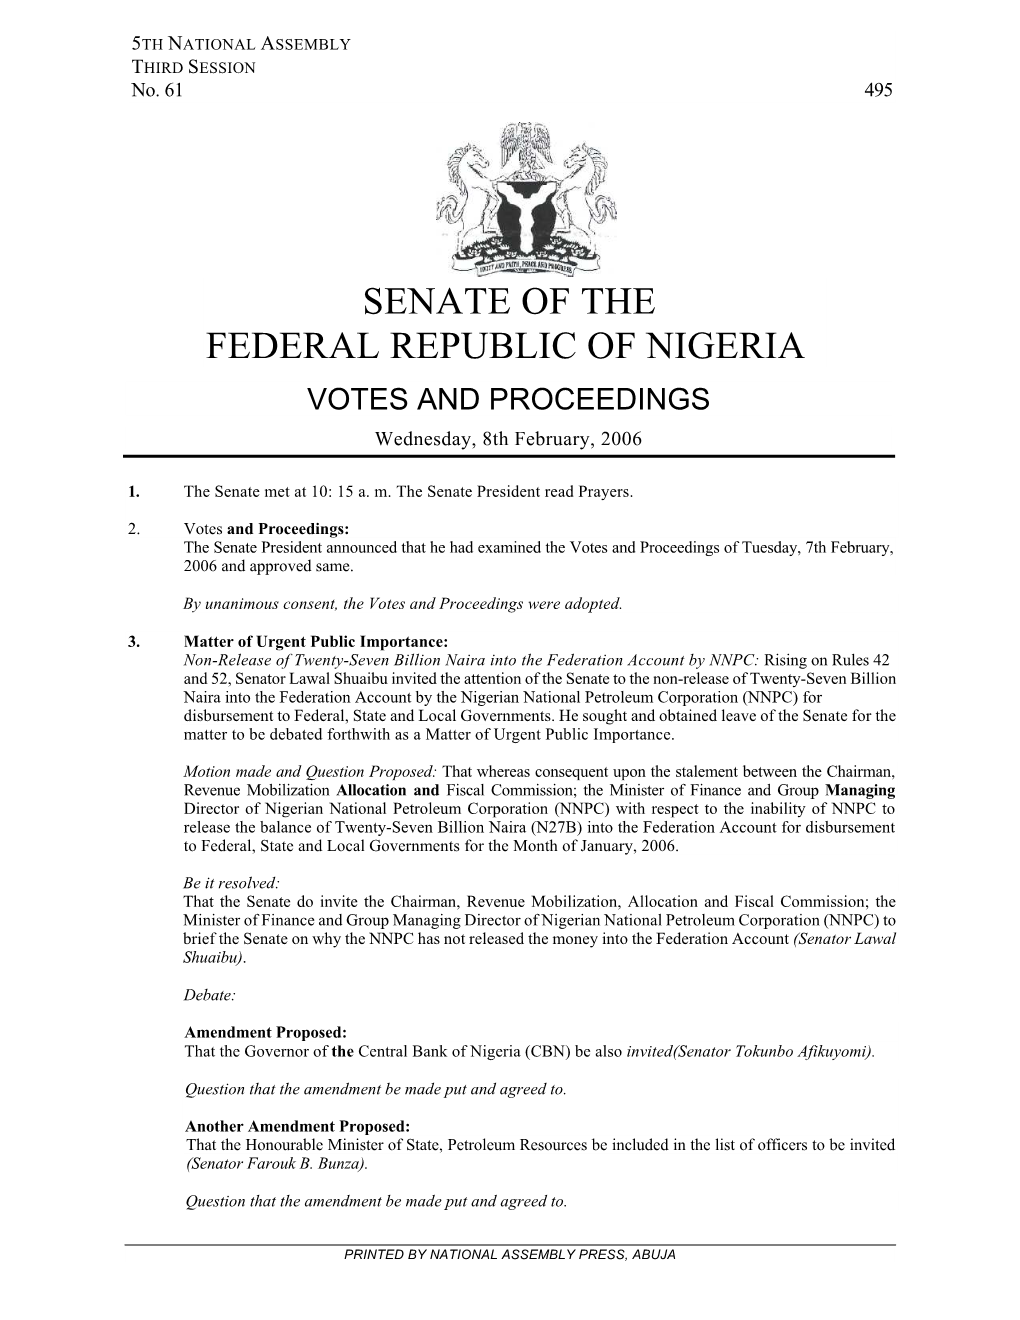 Senate of the Federal Republic of Nigeria